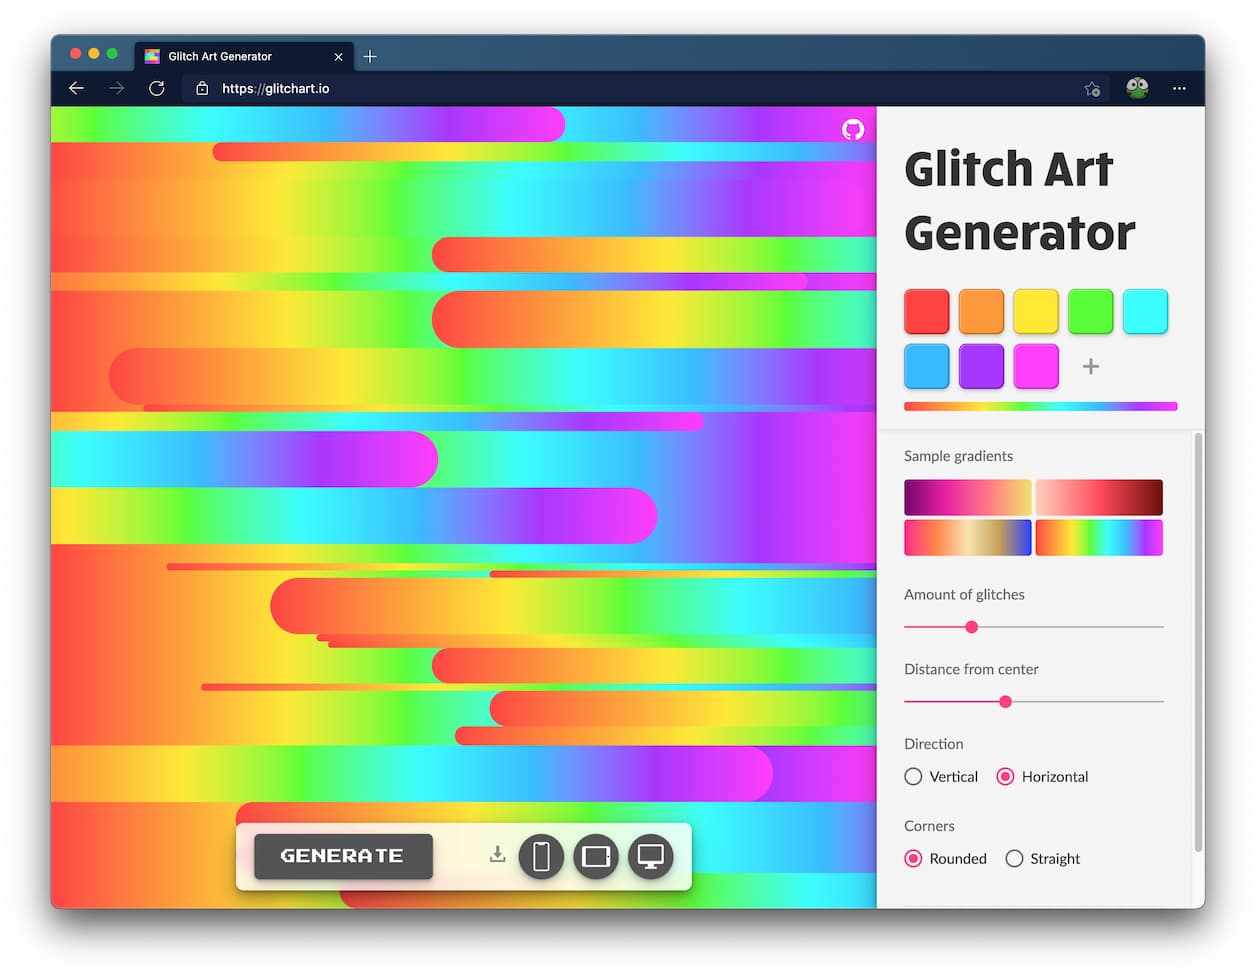 Glitch Art Generator - 漂亮的条状背景图片生成器 1